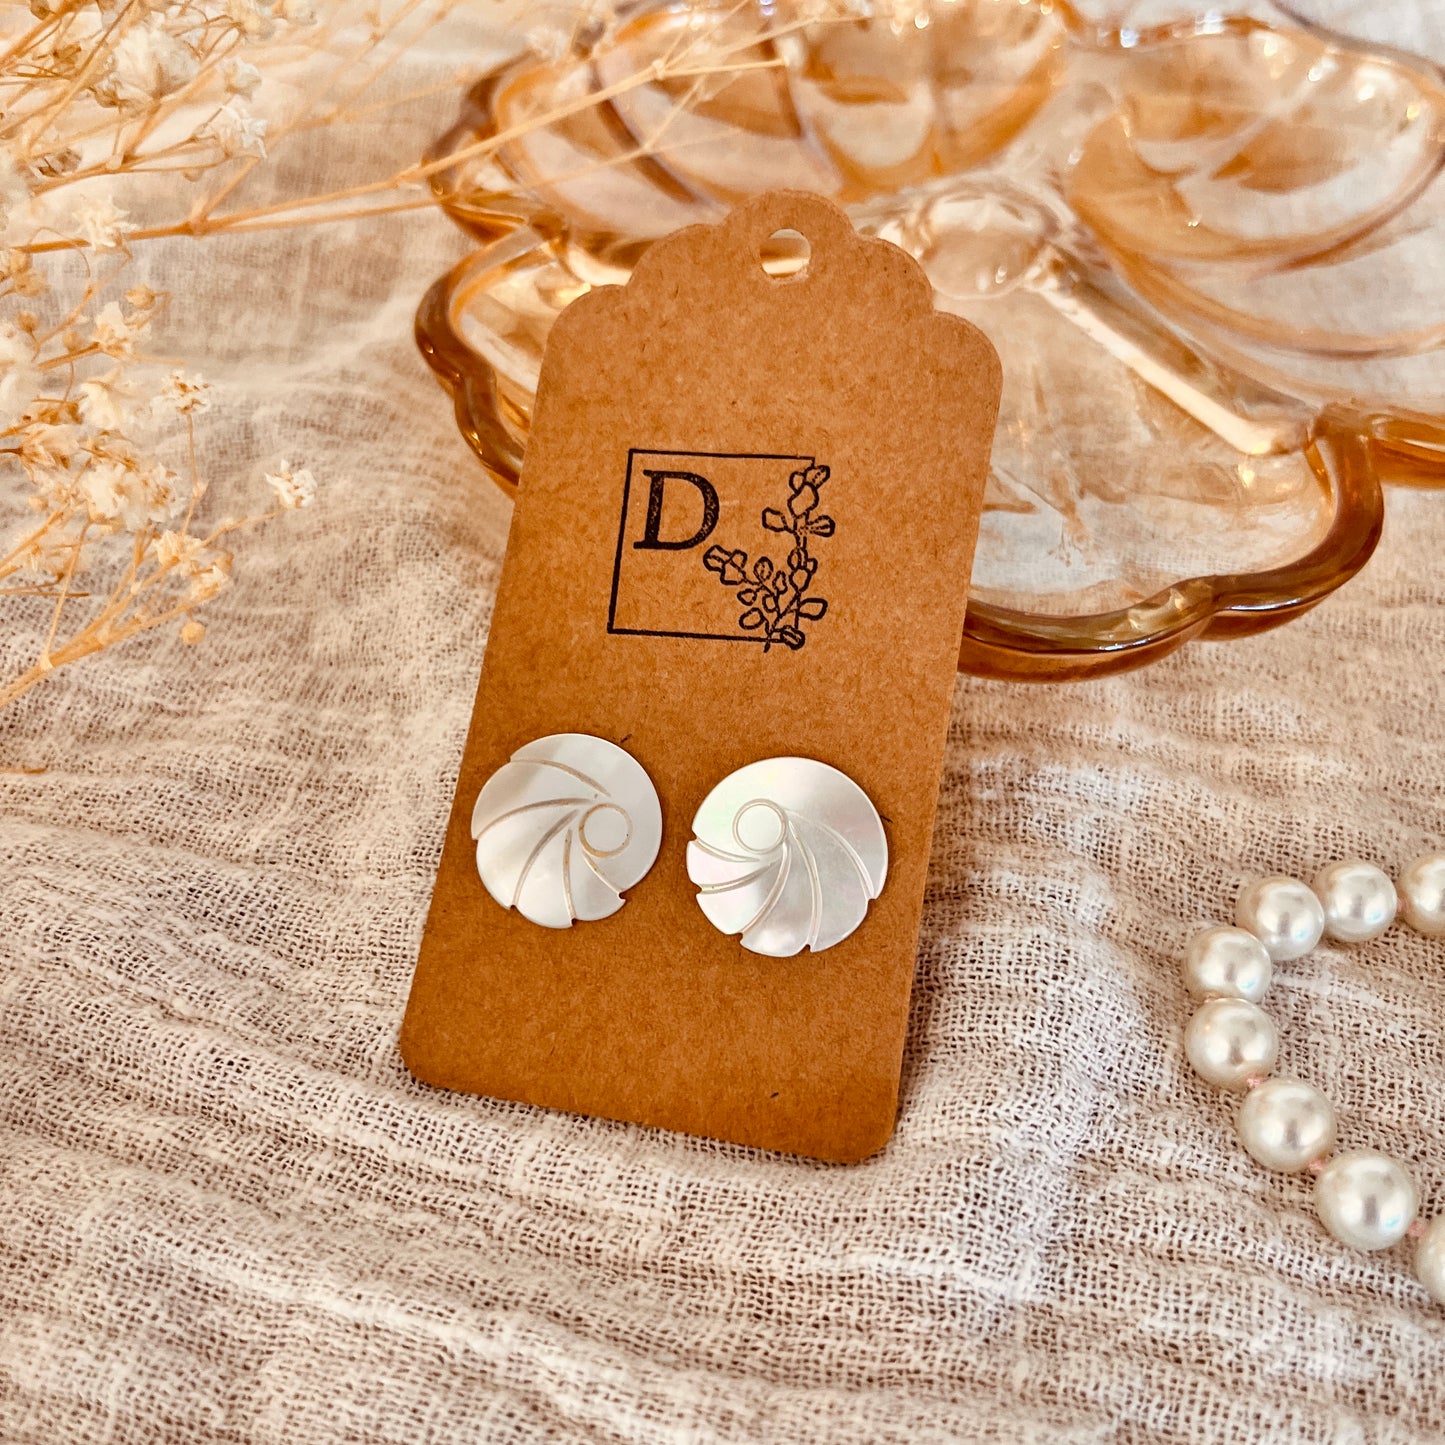 Mother-of-pearl earrings